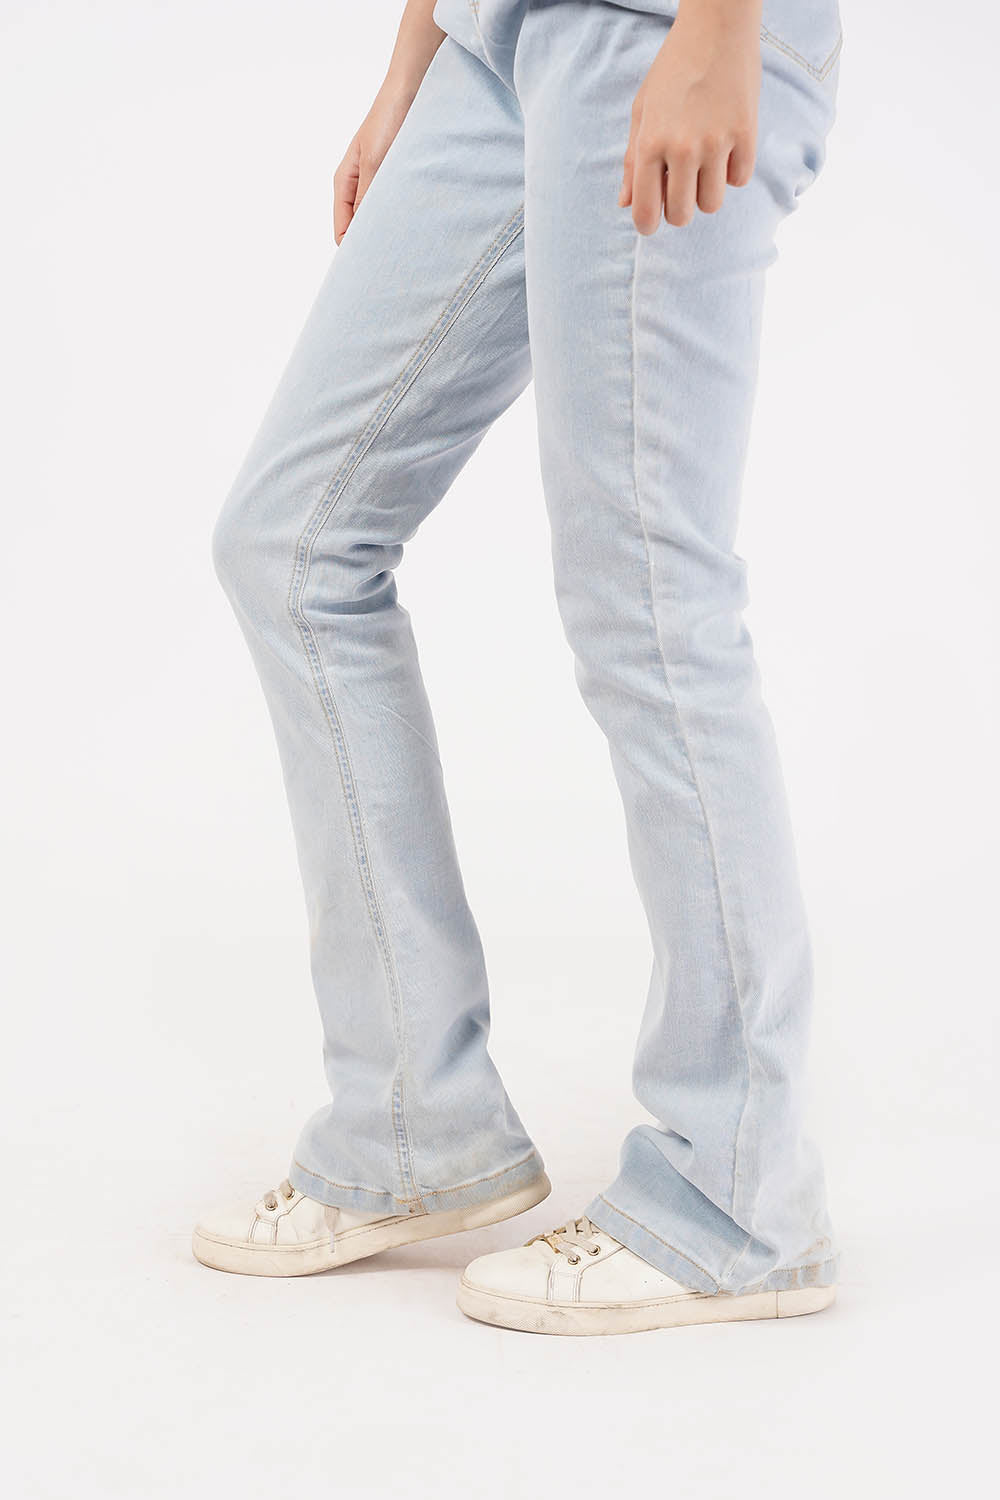 Women's Denim Jeans